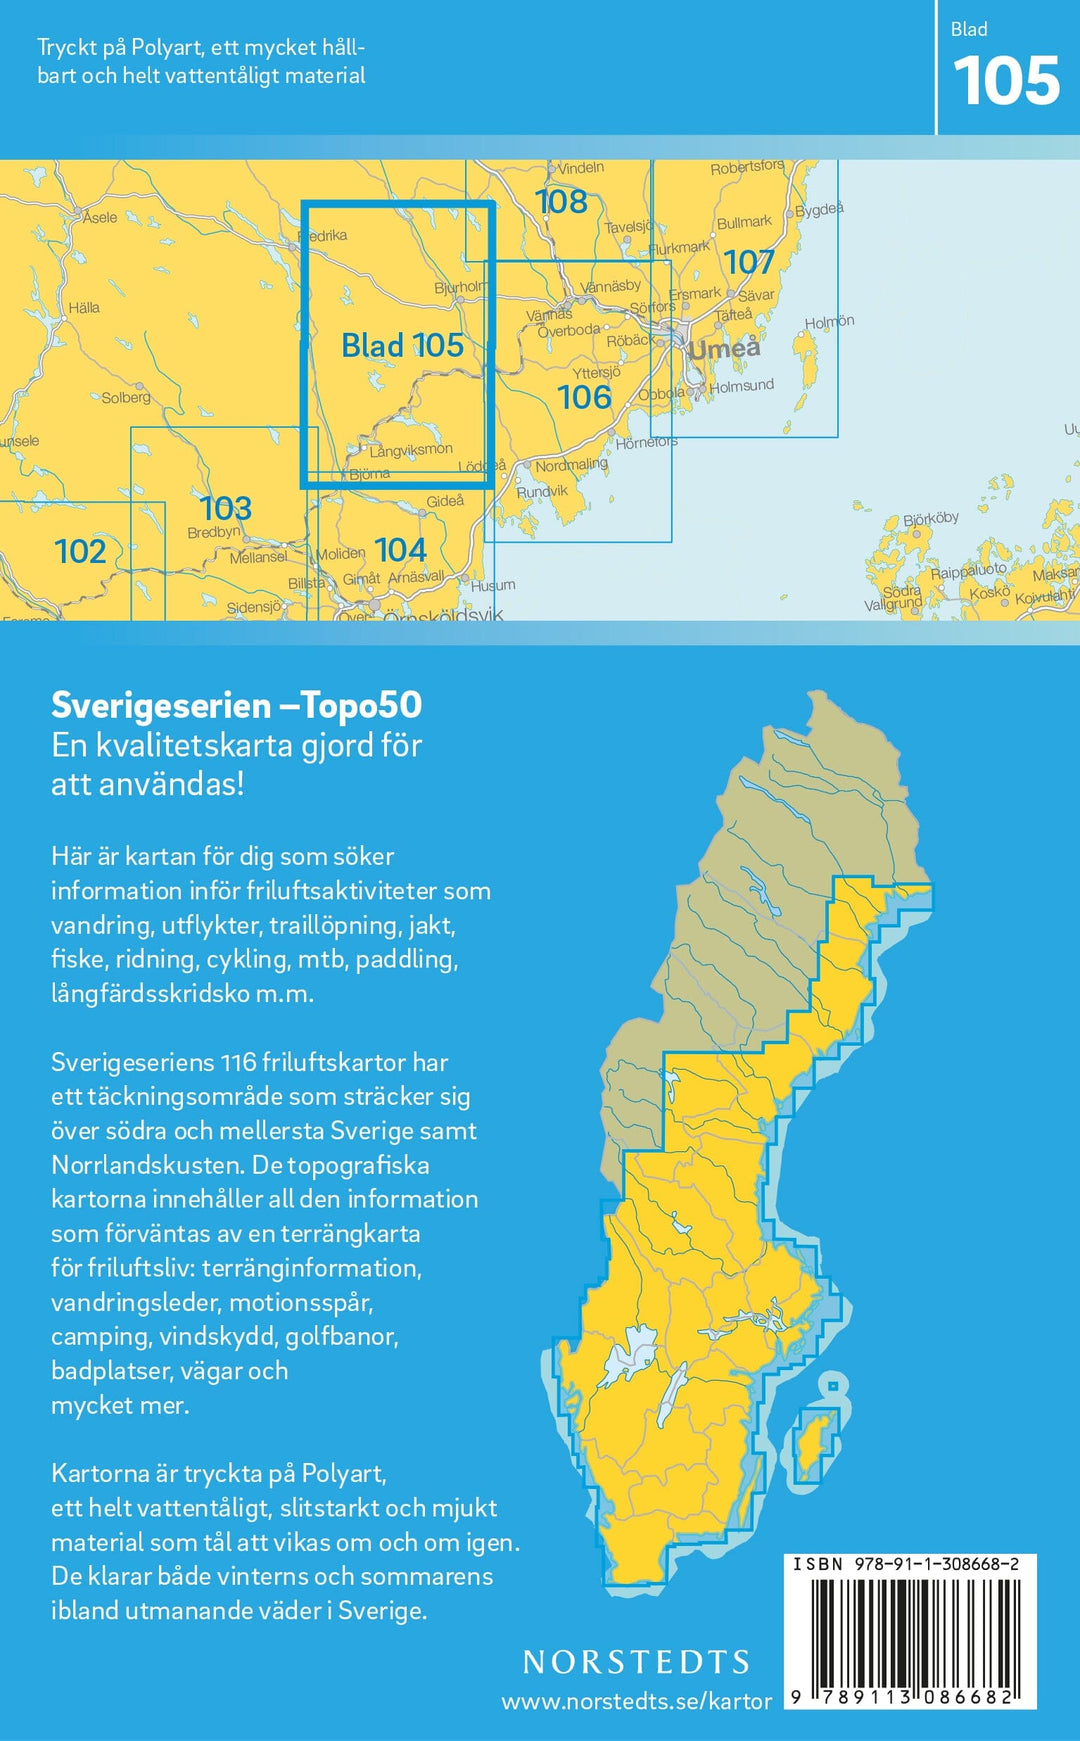 Carte topographique n° 105 - Bjurholm (Suède) | Norstedts - Sverigeserien carte pliée Norstedts 